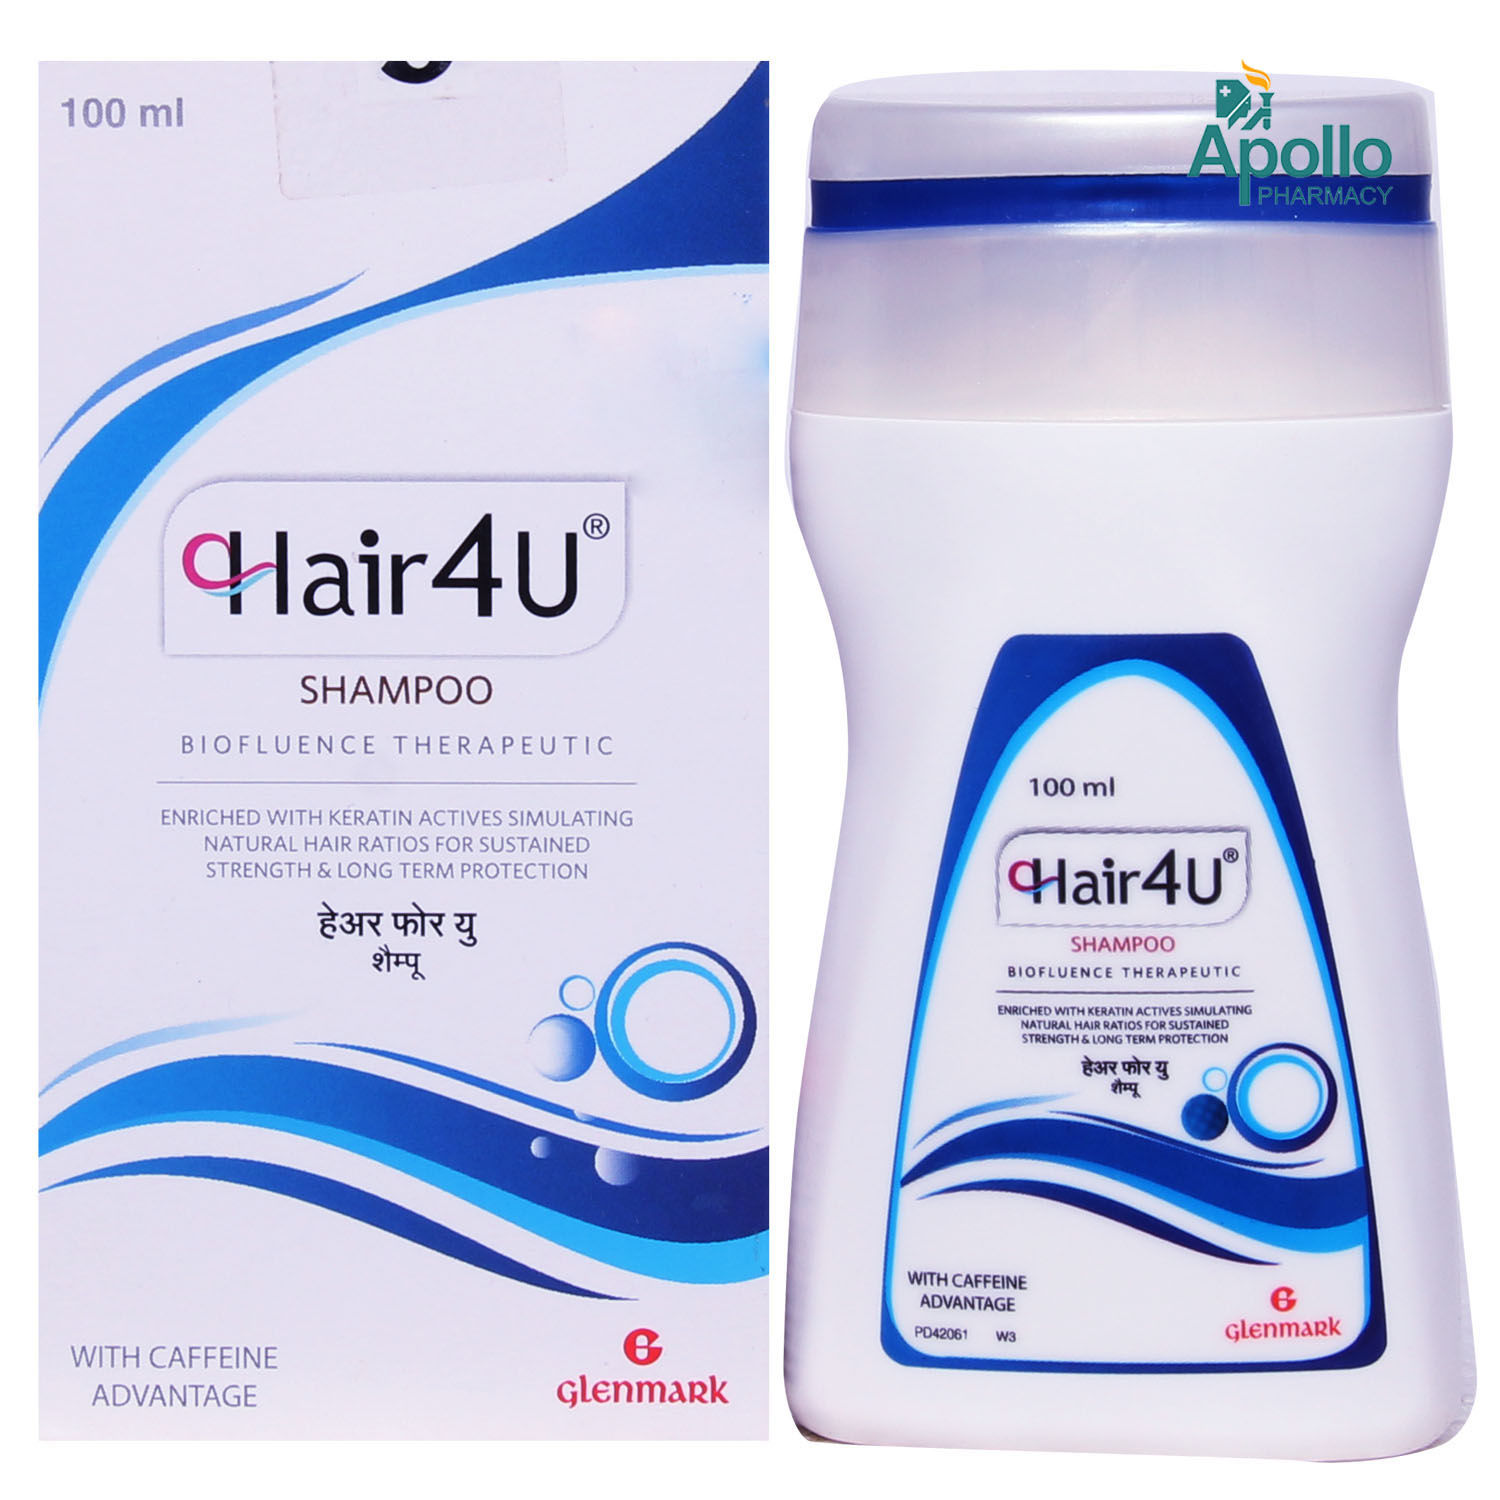 Hair 4U Shampoo, 100 ml, Pack of 1 